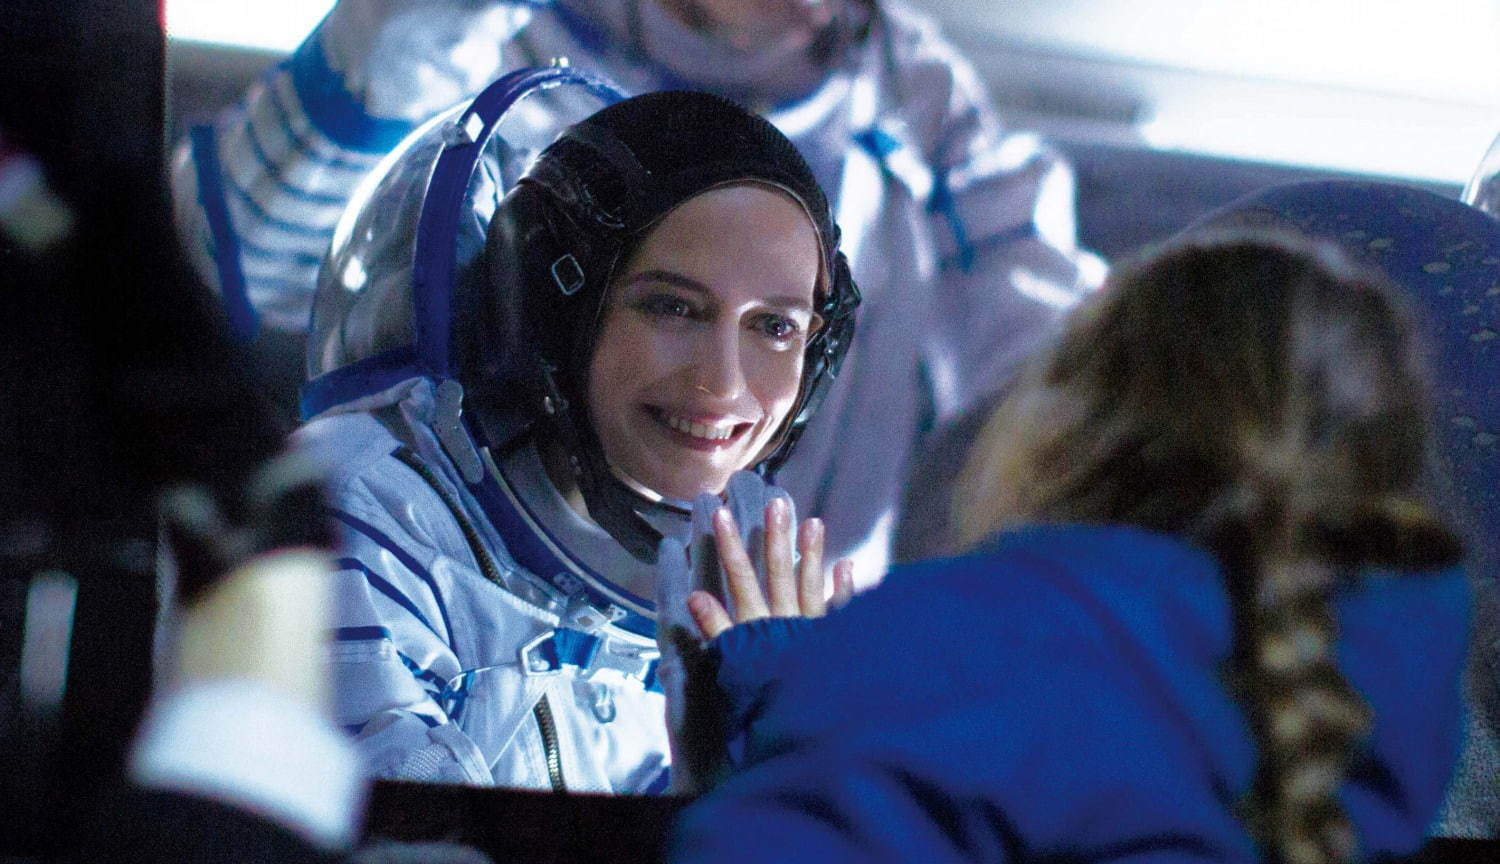 映画 約束の宇宙 そら 主演エヴァ グリーンが 女性宇宙飛行士 に 夢と親子の絆を描く ファッションプレス